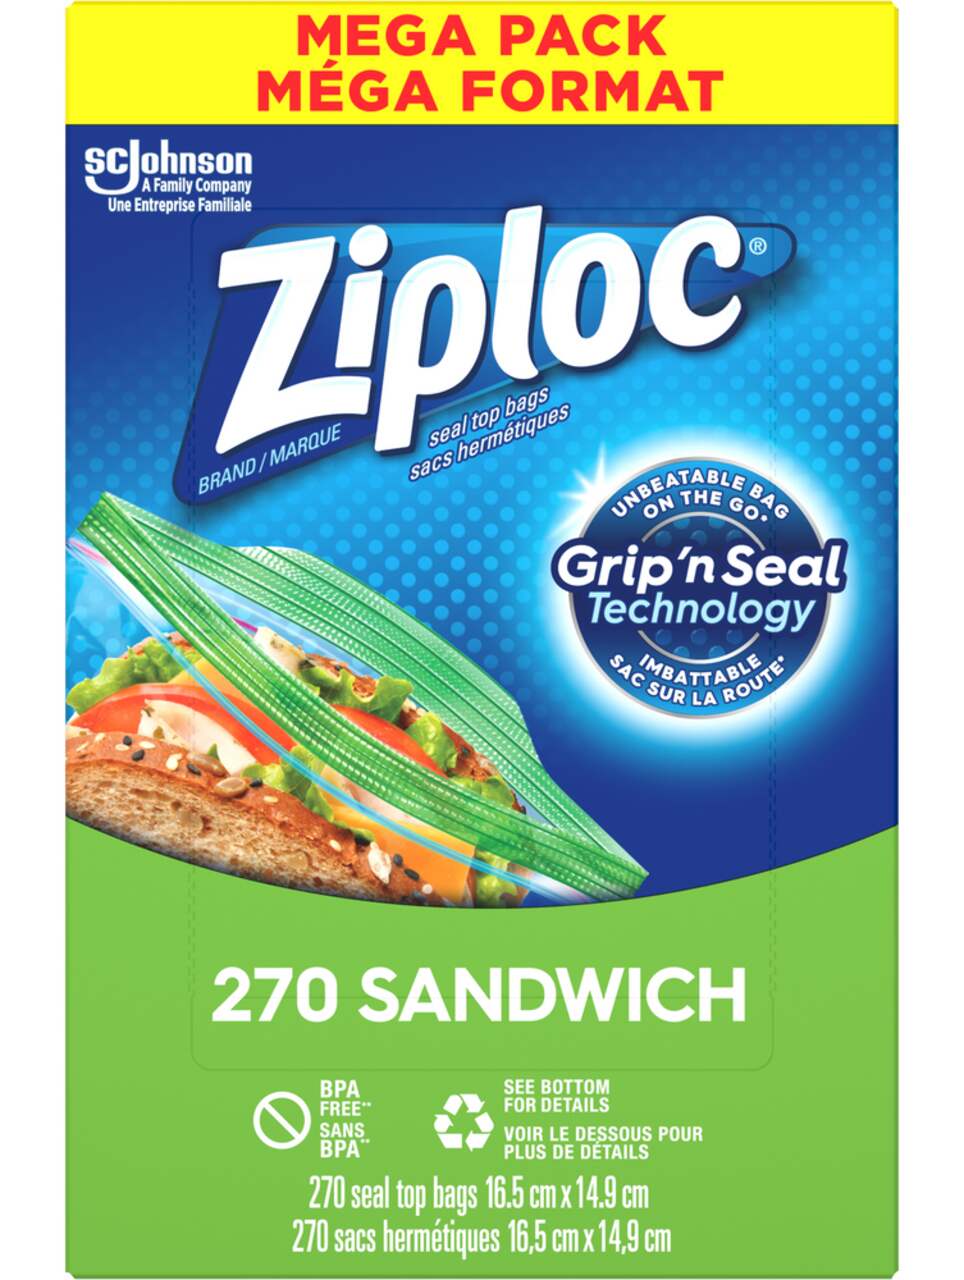 Ziploc® Brand Sandwich Bags Disney's Frozen 2, 50 Count 